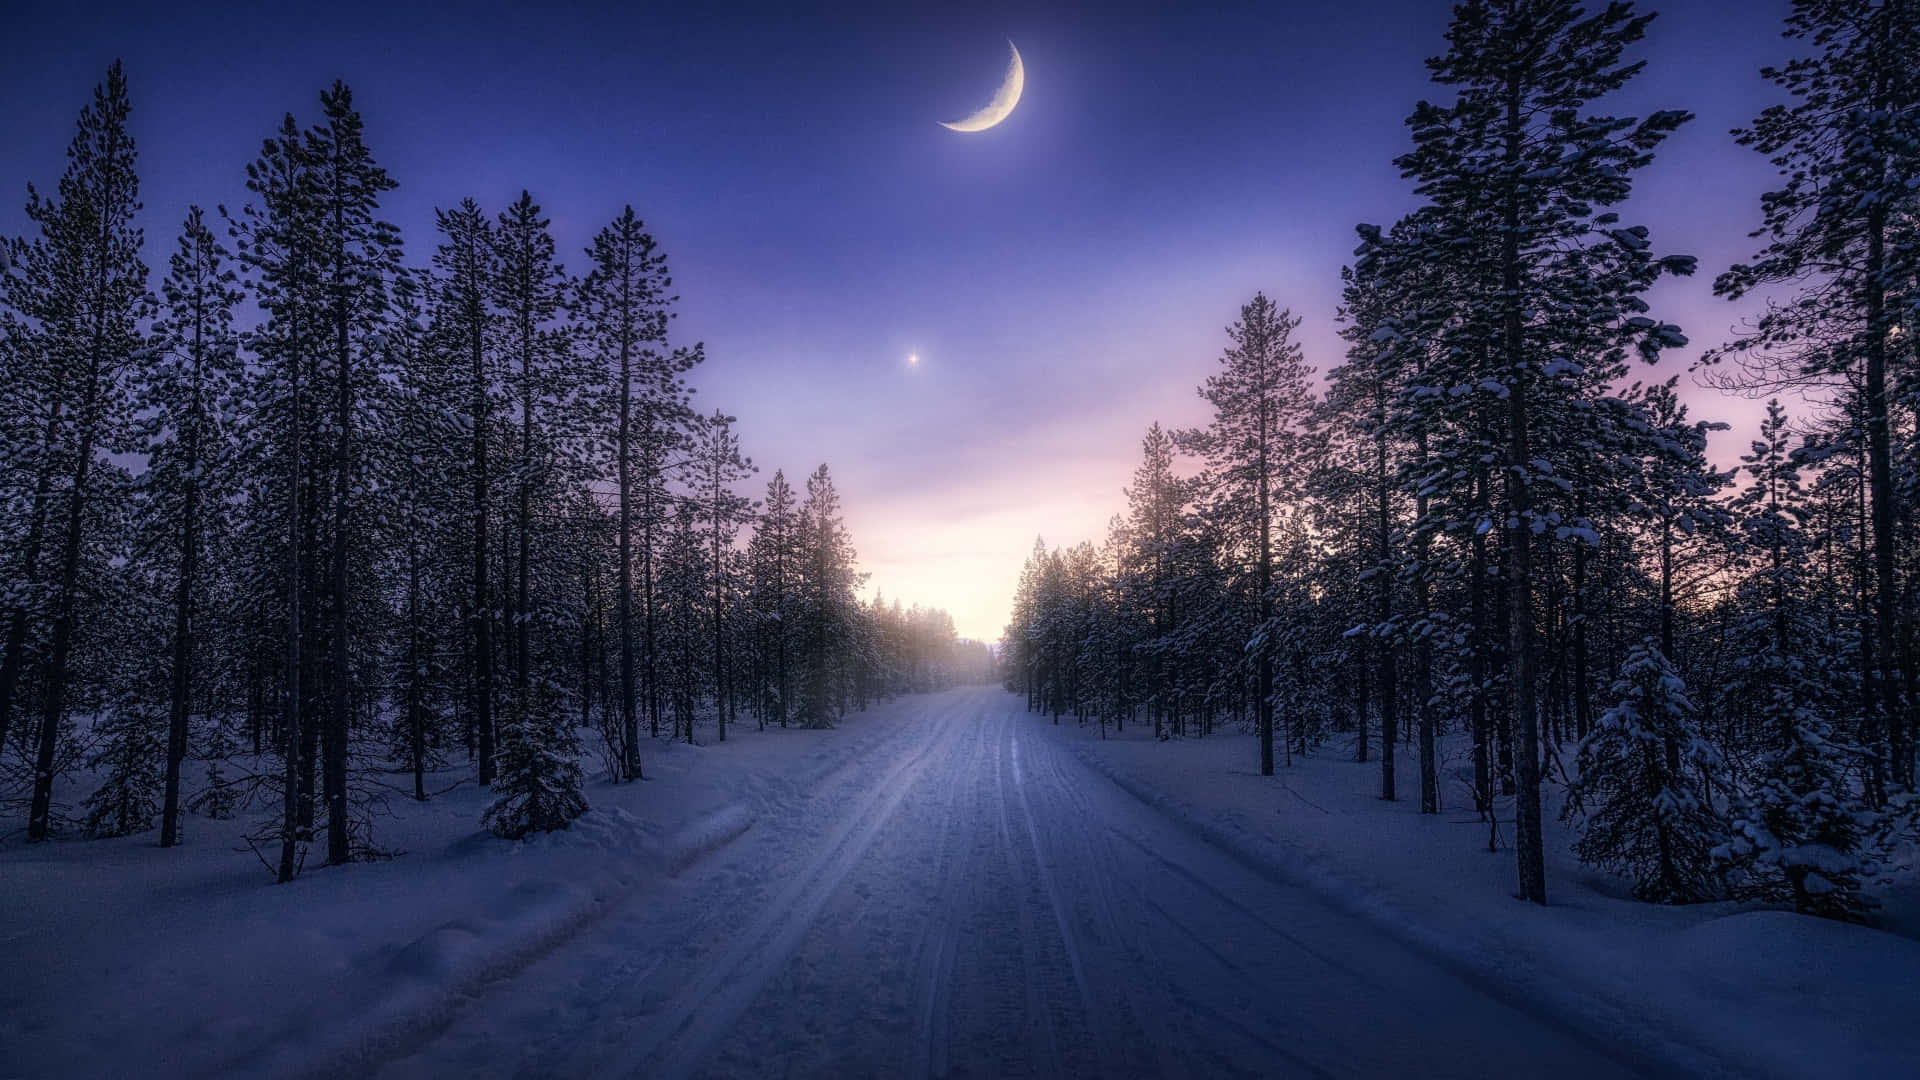 Uncamino Con Árboles Y Una Luna En El Cielo. Fondo de pantalla